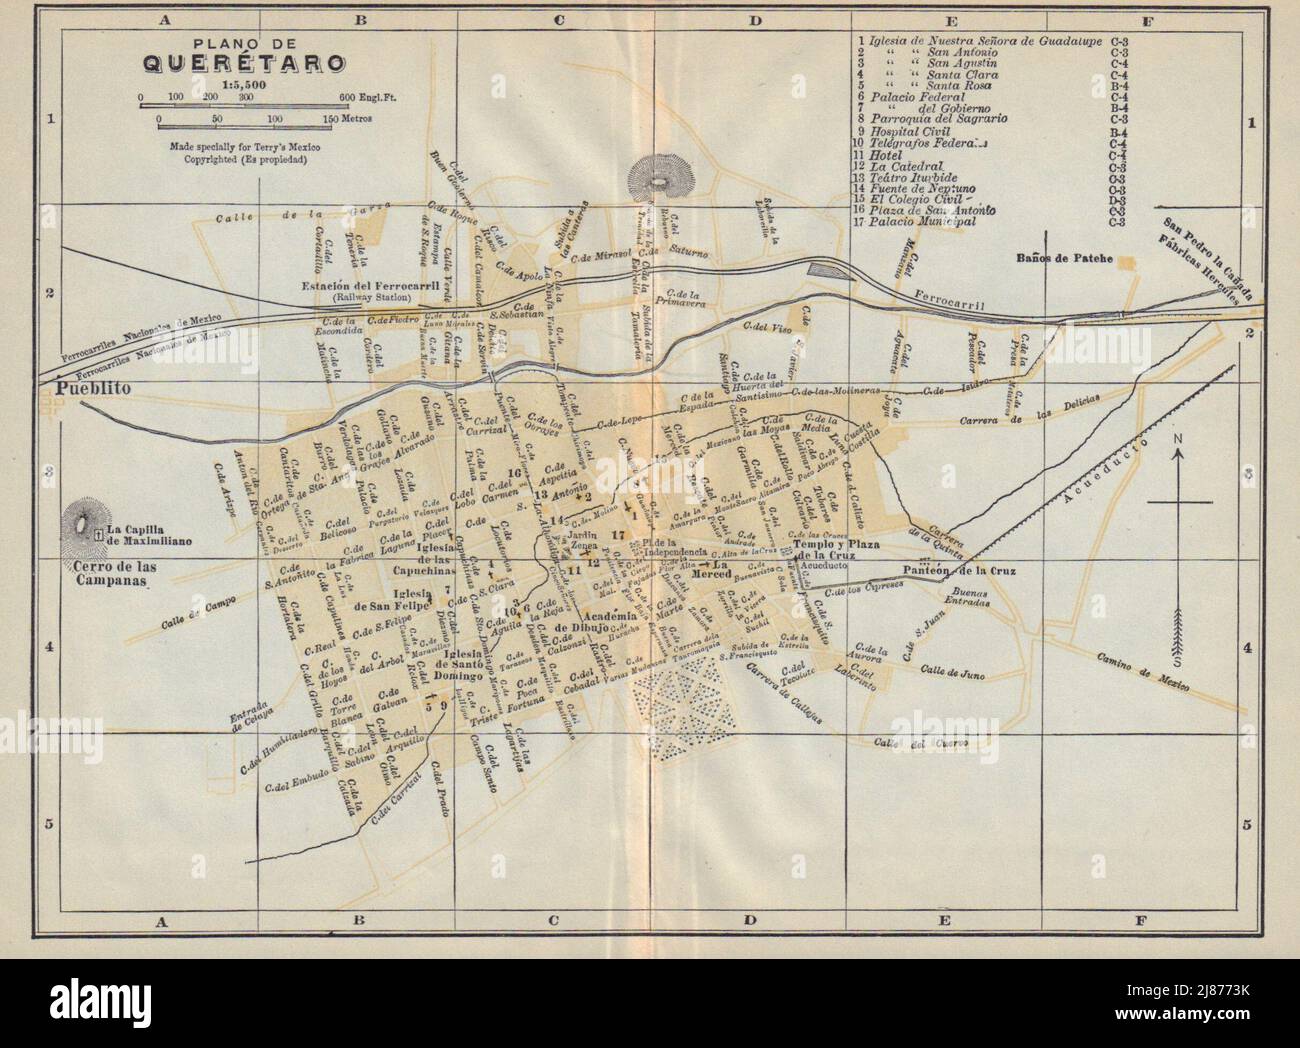 Plano de SANTIAGO DE QUERETARO, Mexico. Mapa de la ciudad. City/town plan 1938 Stock Photo